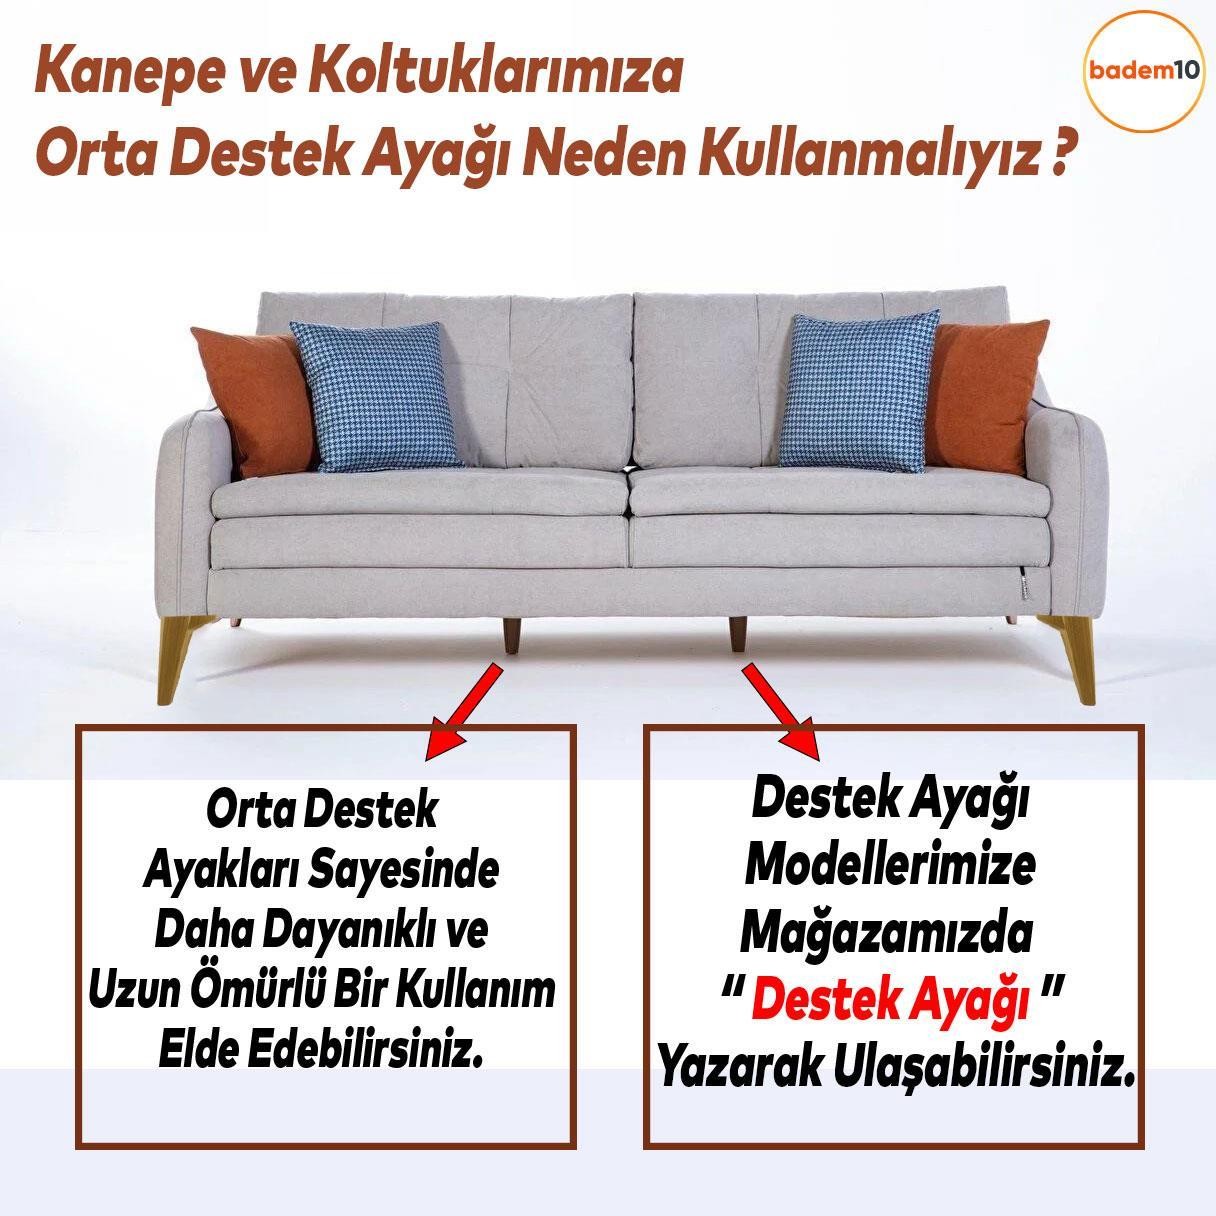 Sedir Lüks Mobilya Kanepe Sehpa Baza TV Ünitesi Koltuk Ayağı Açık Ceviz 18 cm Ayak (4 ADET)